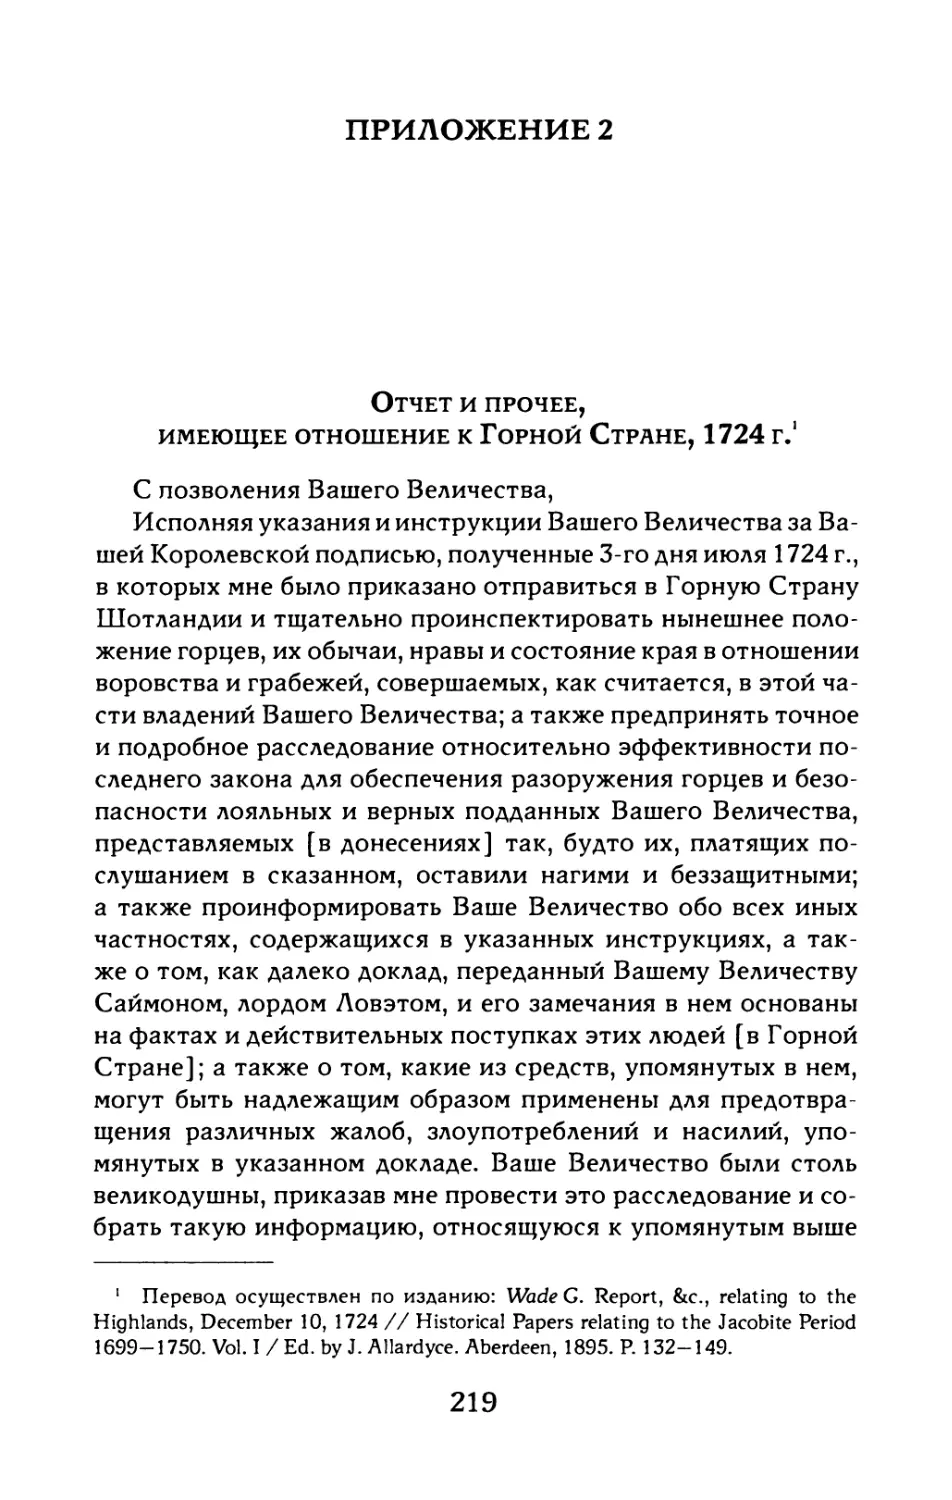 Приложение 2. Отчет и прочее, имеющее отношение к Горной Стране, 1724 г.